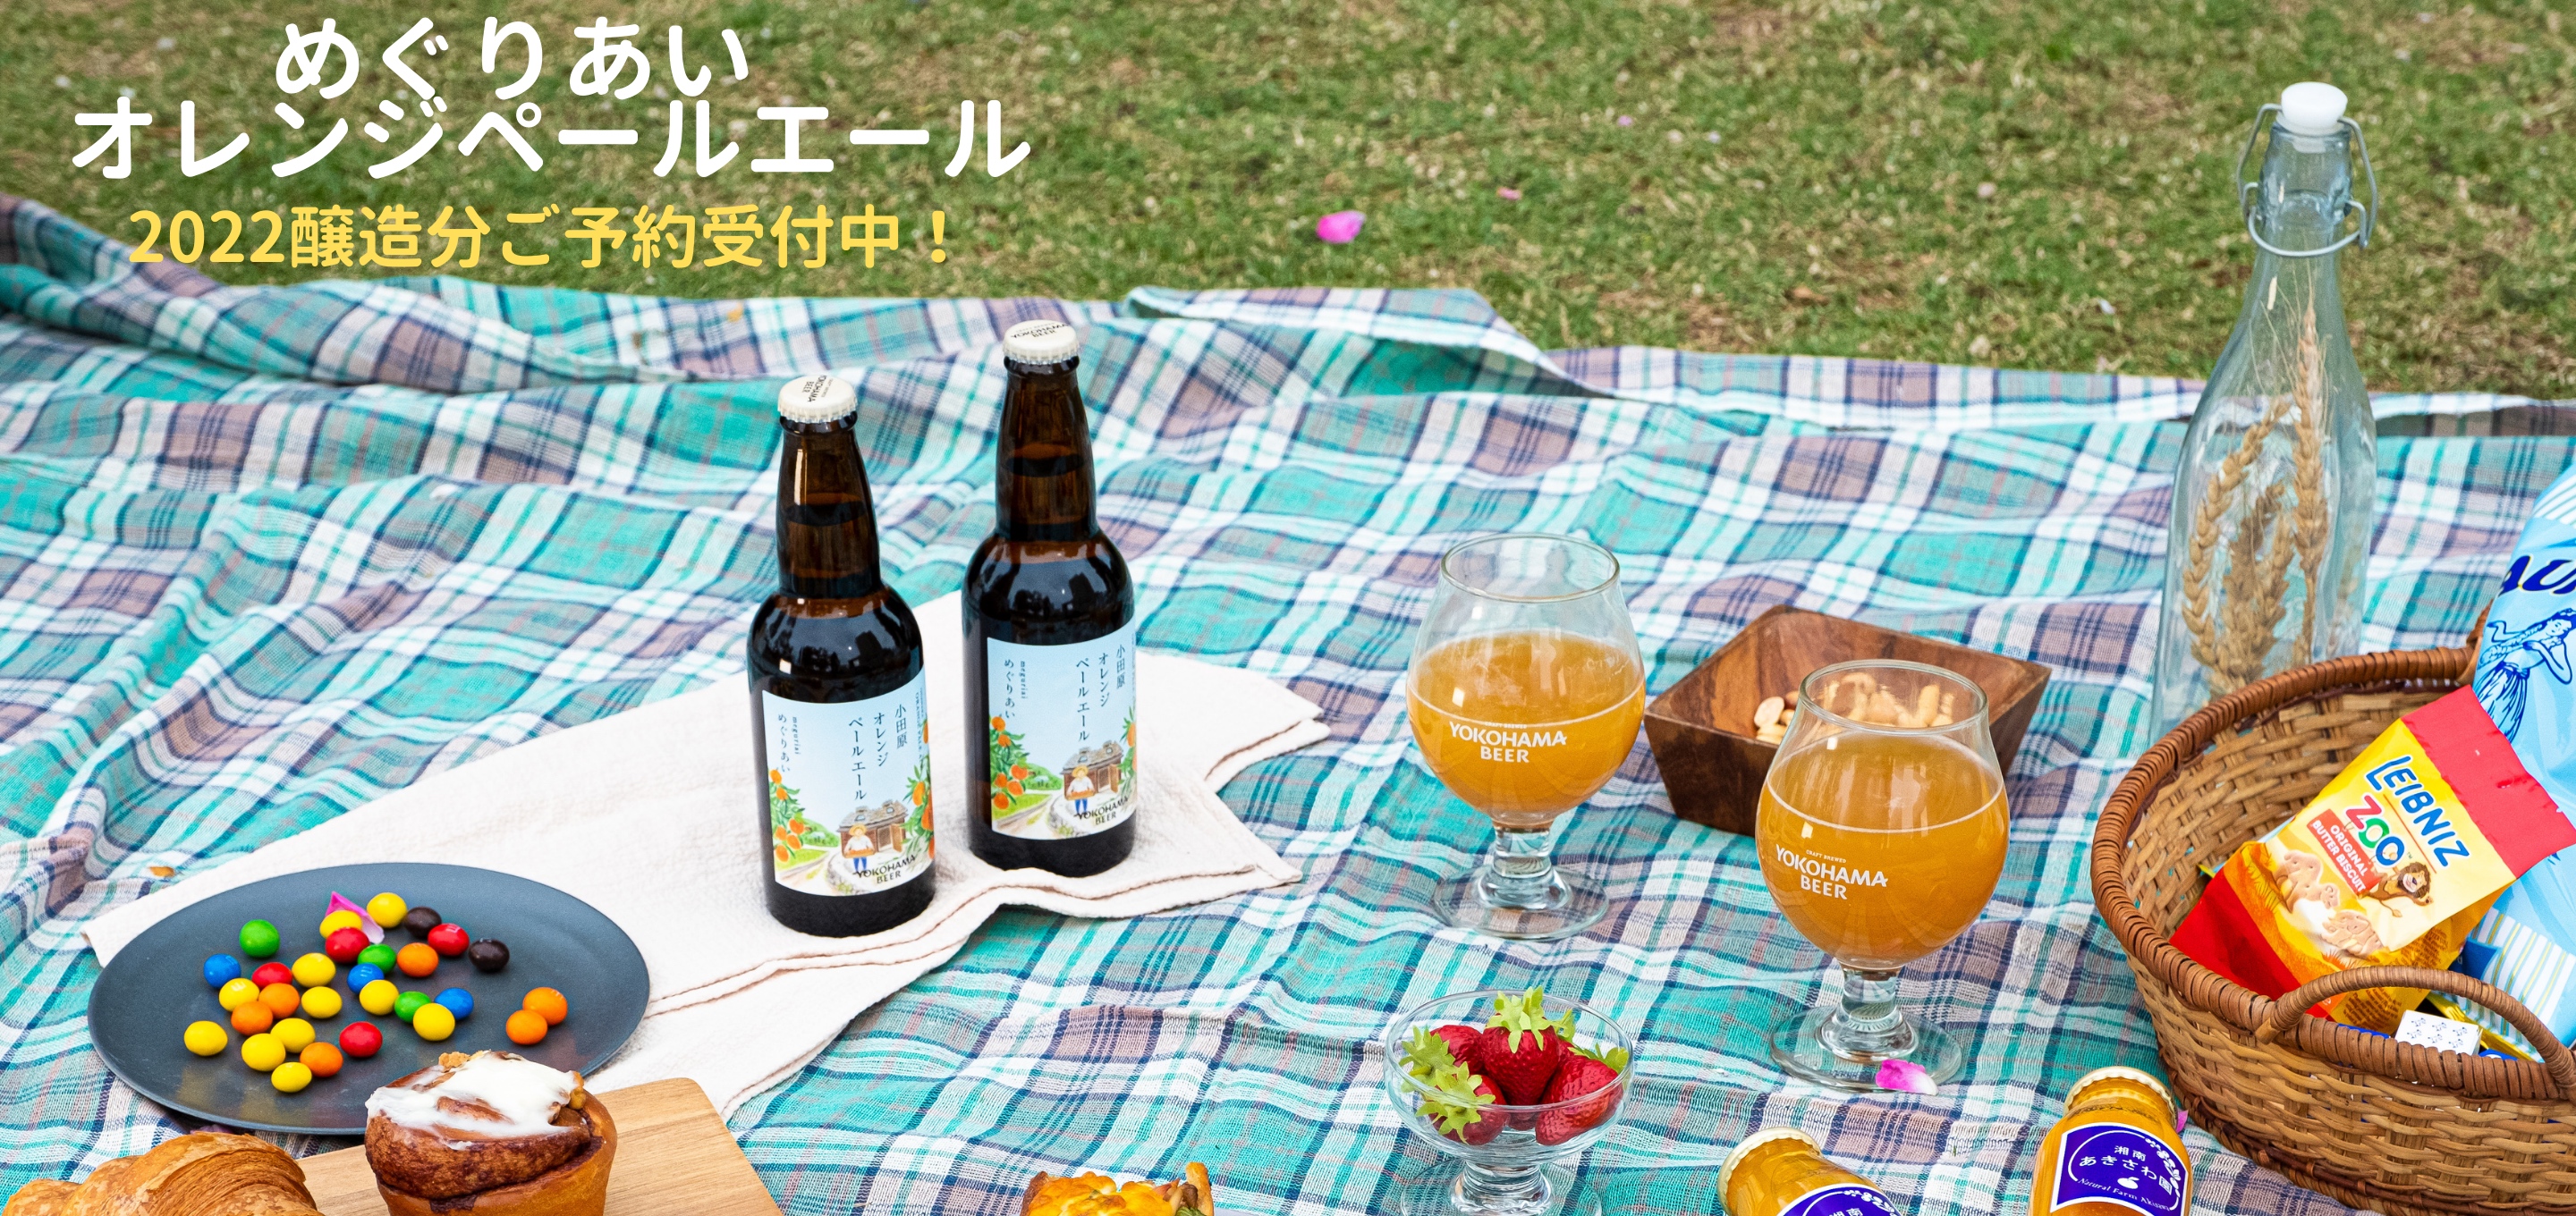 〜めぐりあい〜 小田原オレンジペールエール2022年醸造分が仕上がりました！